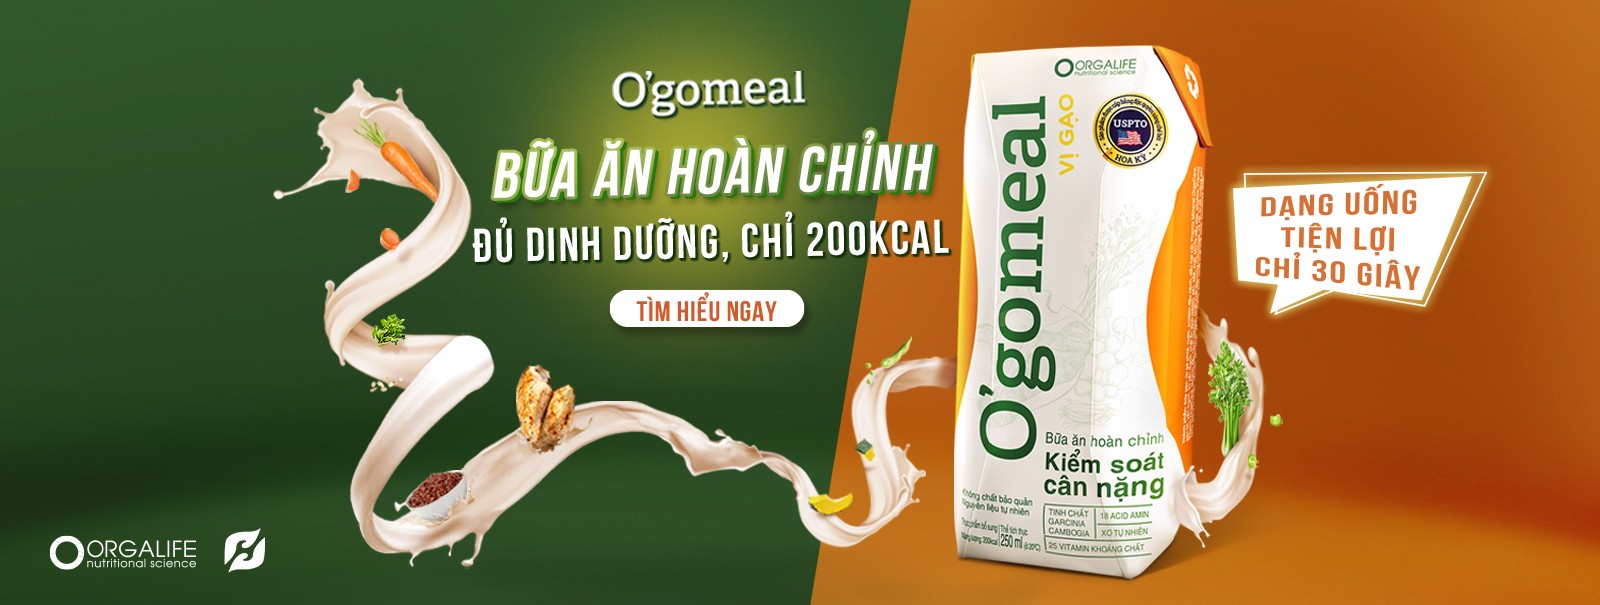 Ogomeal - Thực phẩm hỗ trợ giảm cân cho phái đẹp